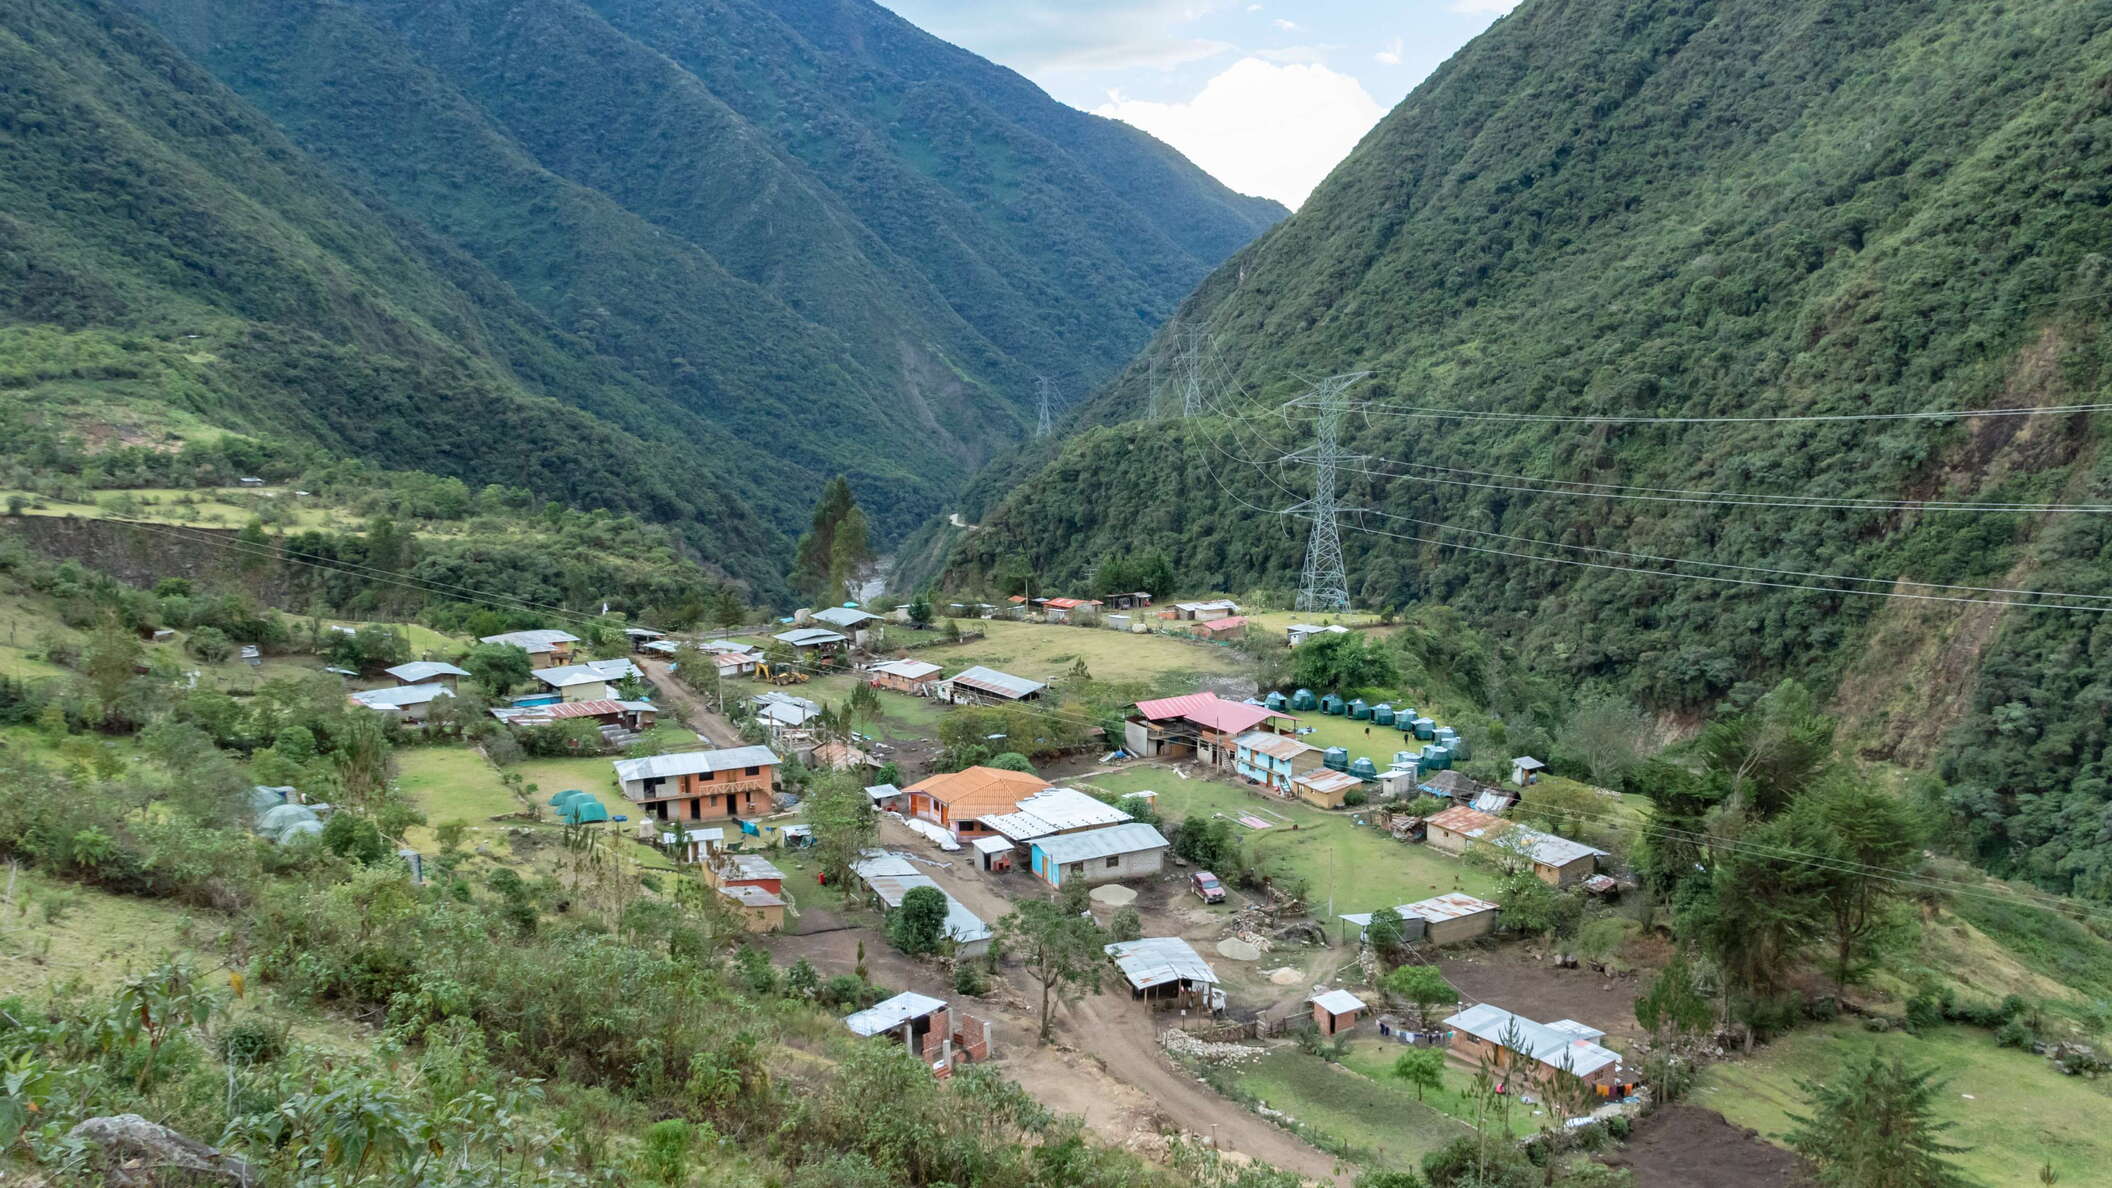 Santa Teresa Valley with Collpapampa